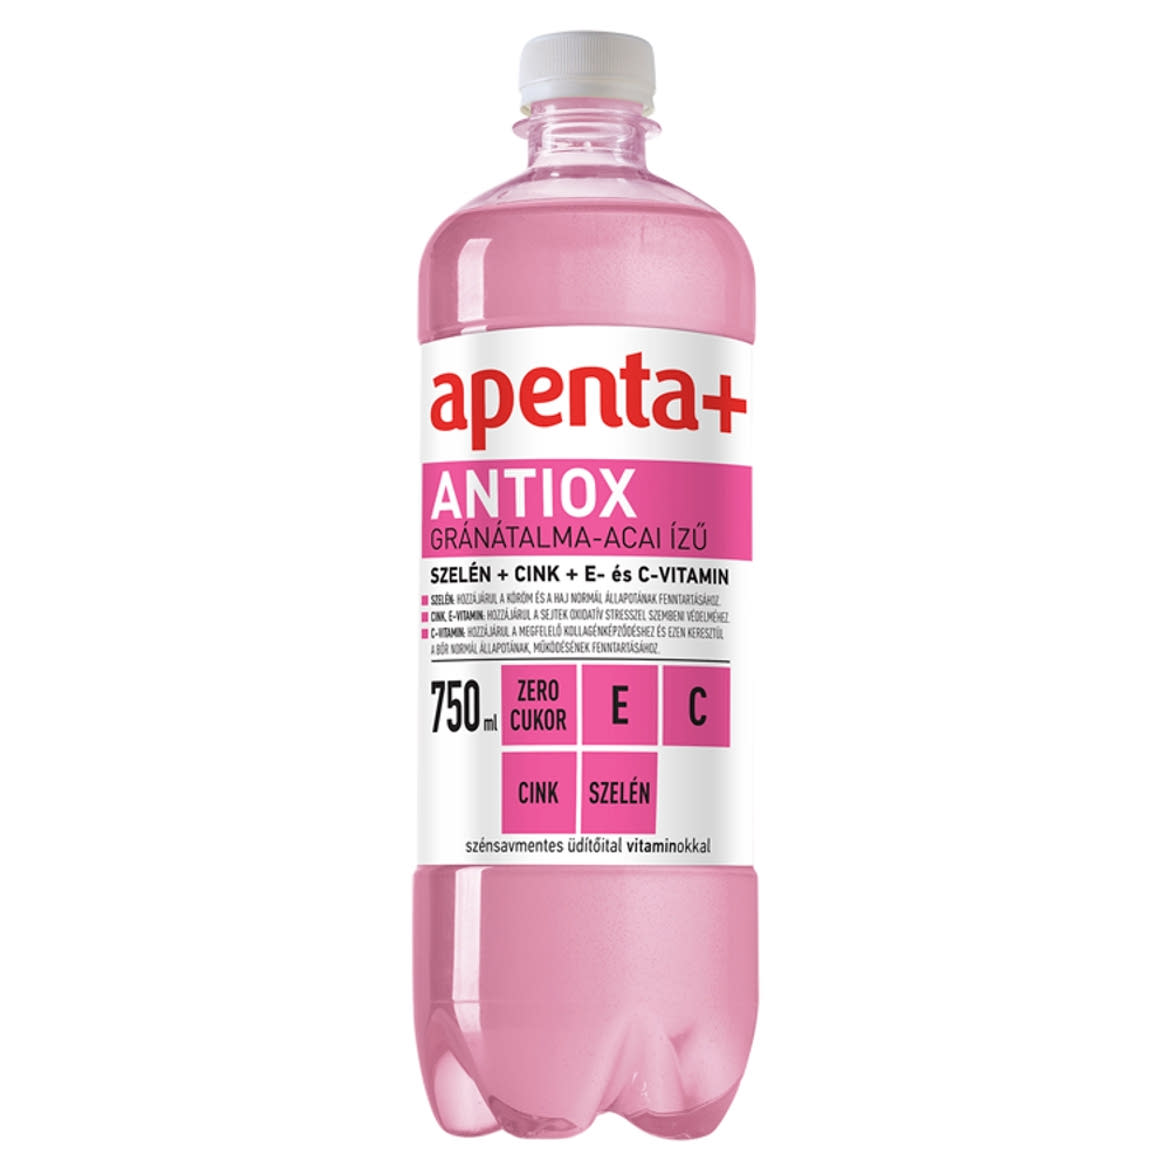 Apenta+ Antiox gránátalma-acai ízű szénsavmentes energiaszegény üdítőital vitaminokkal